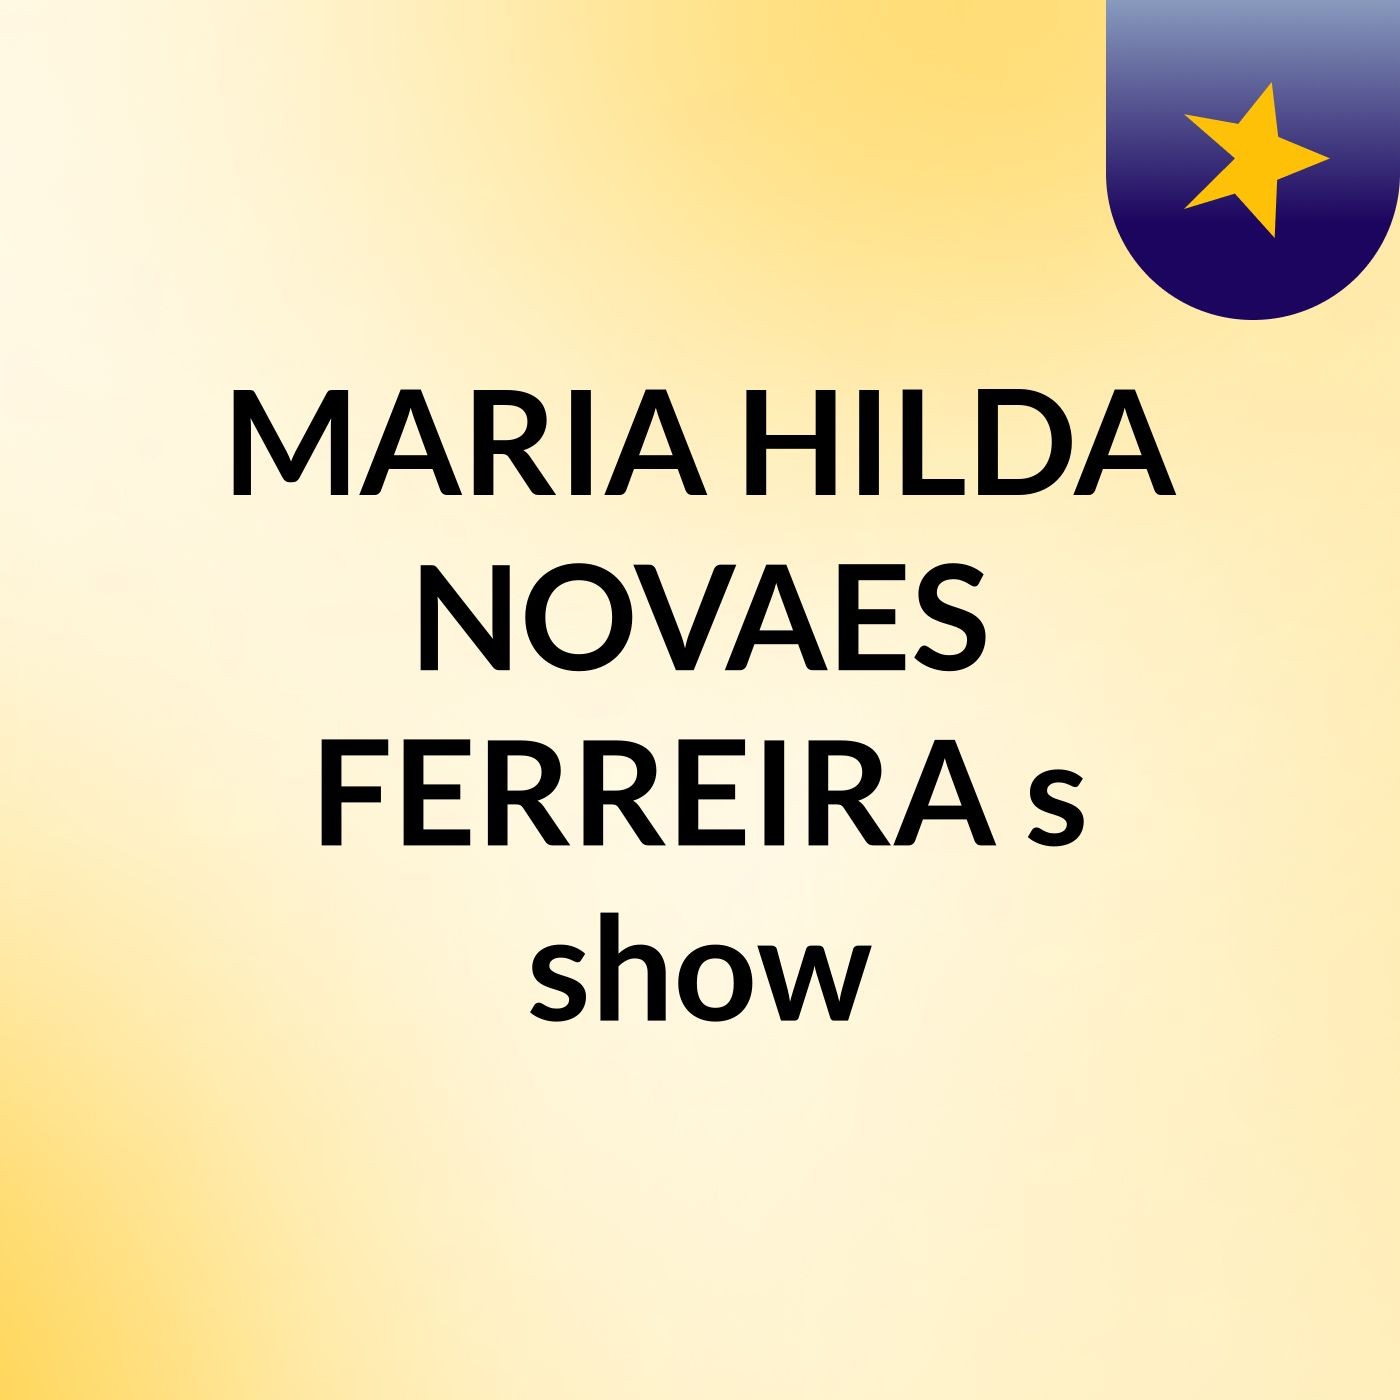 MARIA HILDA NOVAES FERREIRA's show